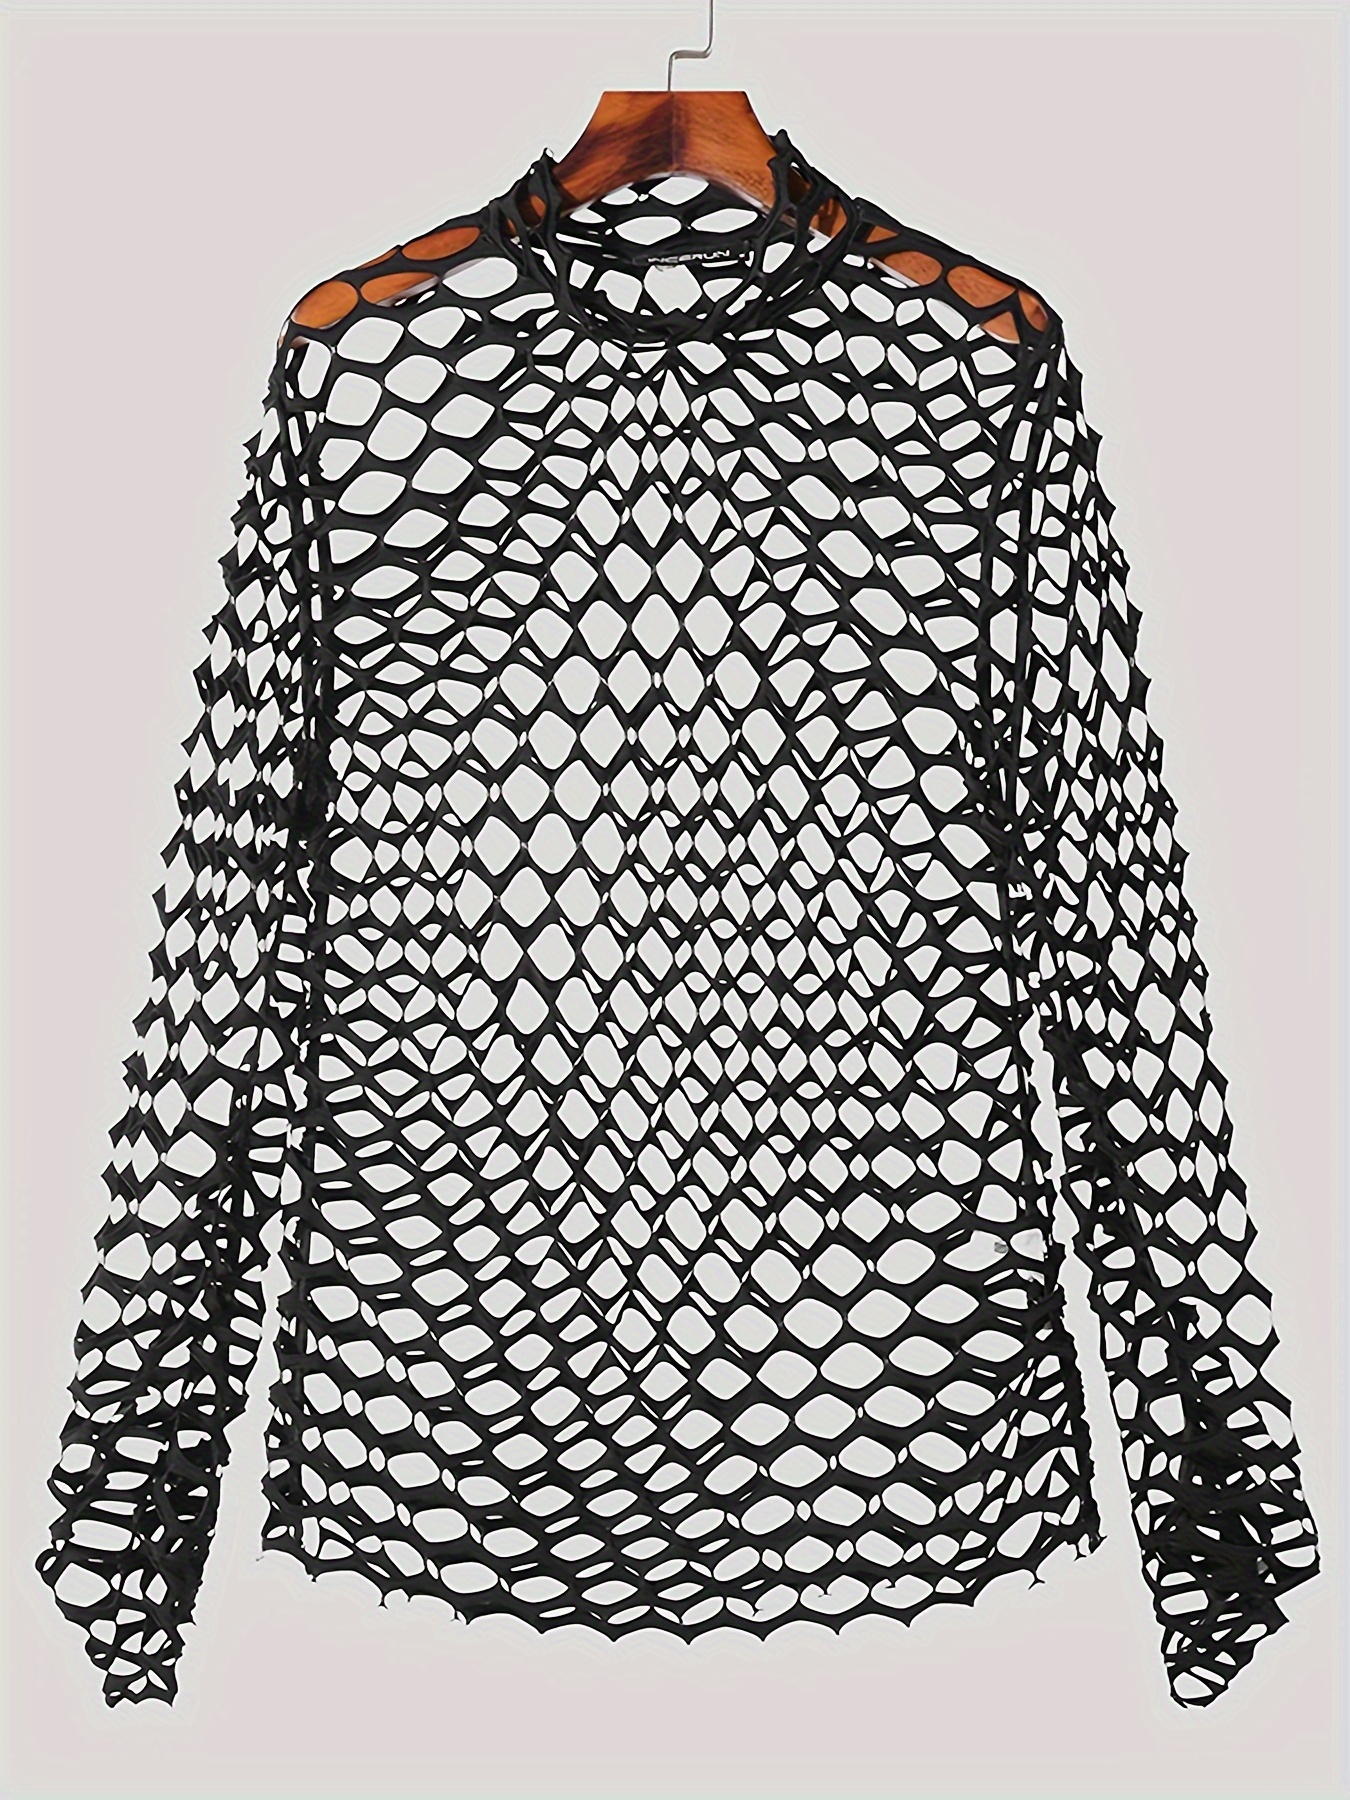  Fishnet Top For Women Long Sleeve Fishnet Shirt